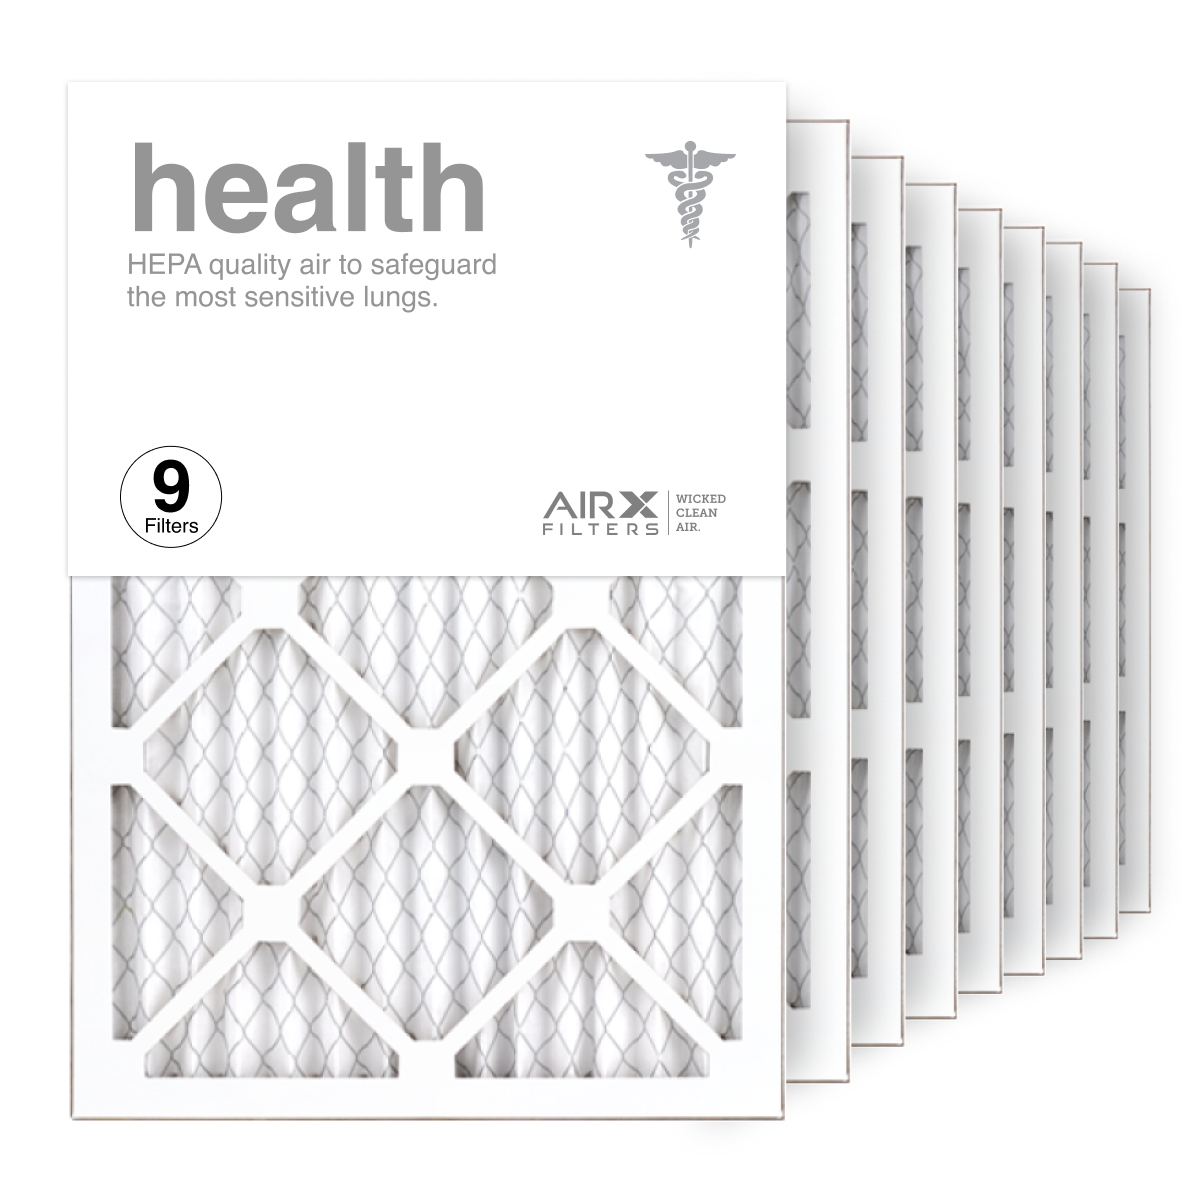 14x20x1 AIRx HEALTH Air Filter, 9-Pack